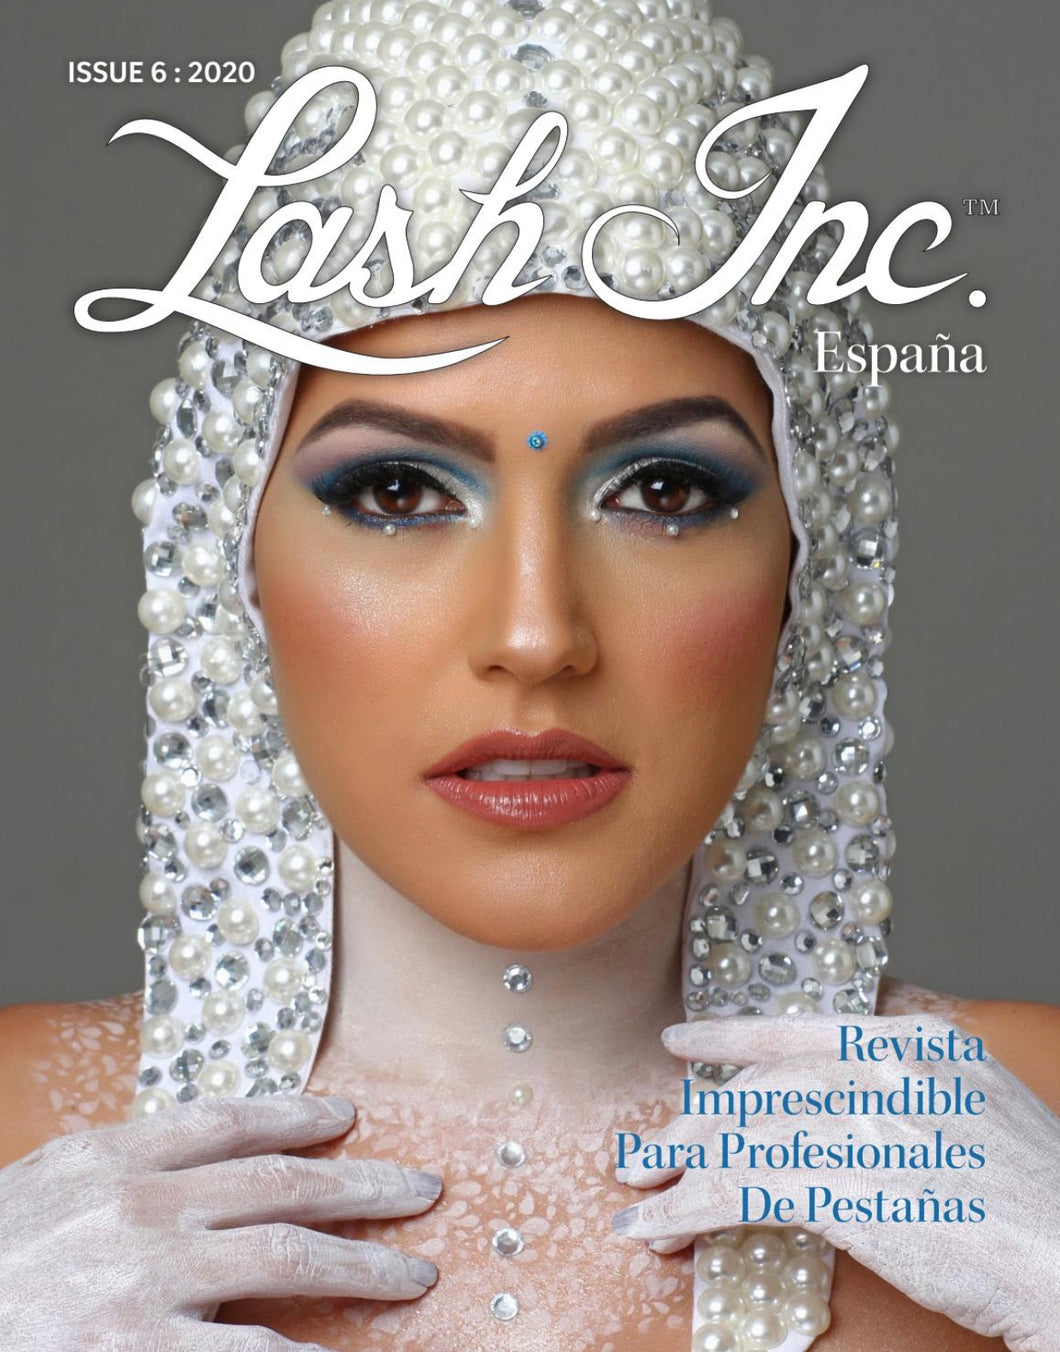 Revista Lash Inc. España Nr.6 - version digital